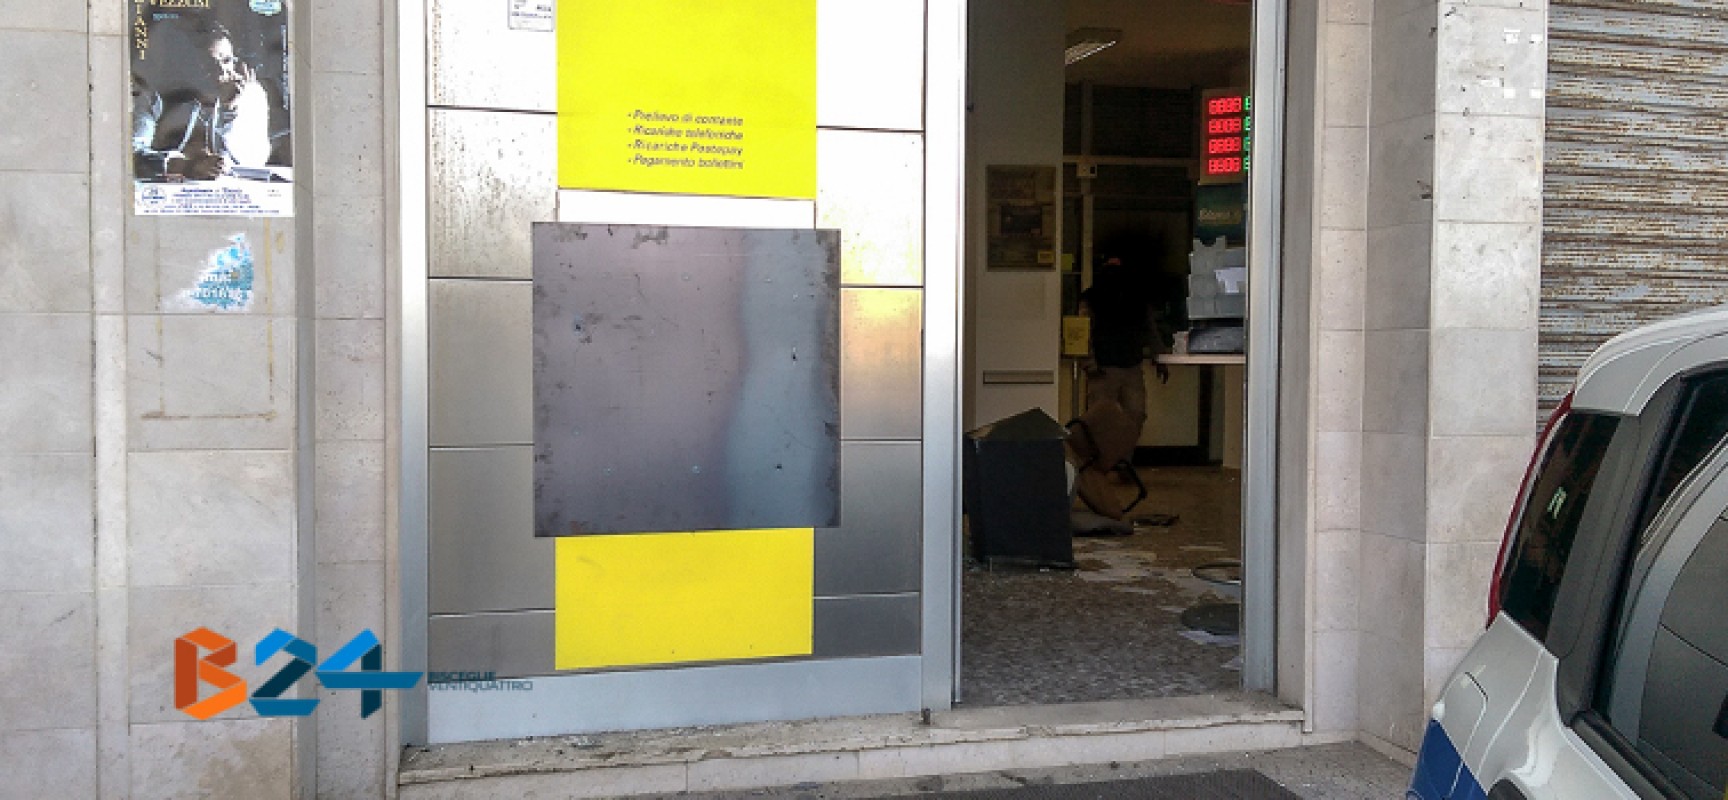 Bomba e furto alla posta di Sant’Andrea: rubati i soldi dello sportello automatico / FOTO